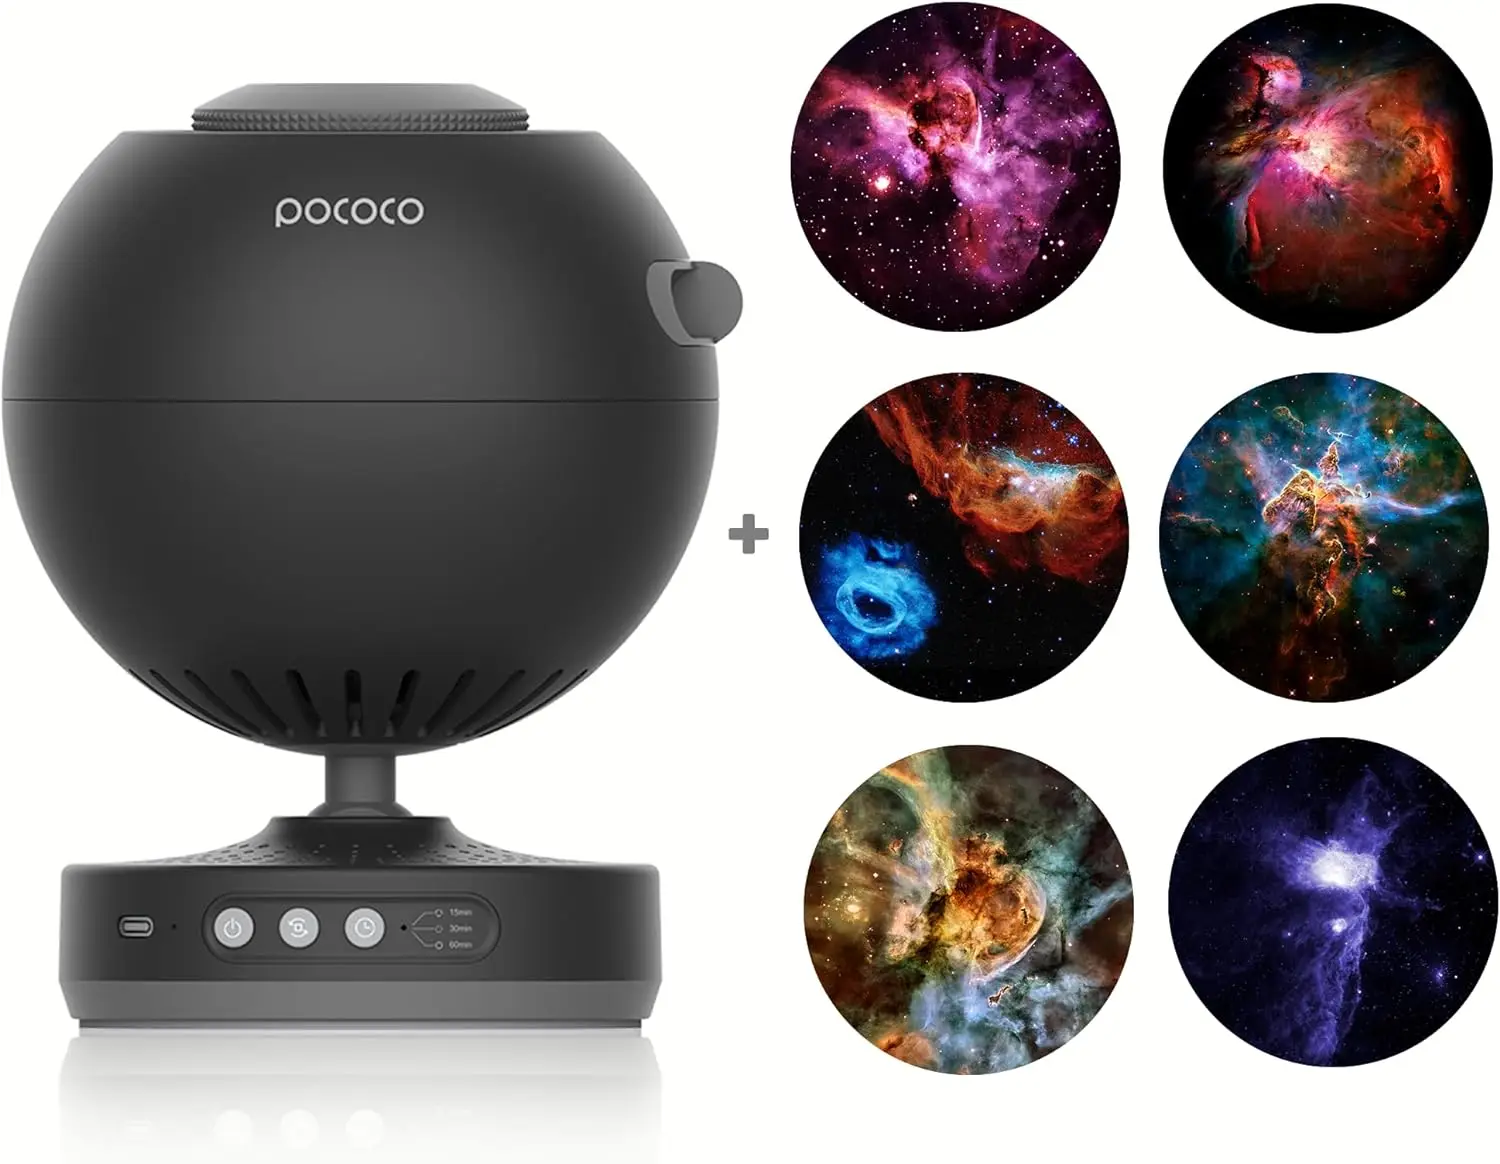 POCOCO Galaxy Projector Creates Your Room a Cozy Universe